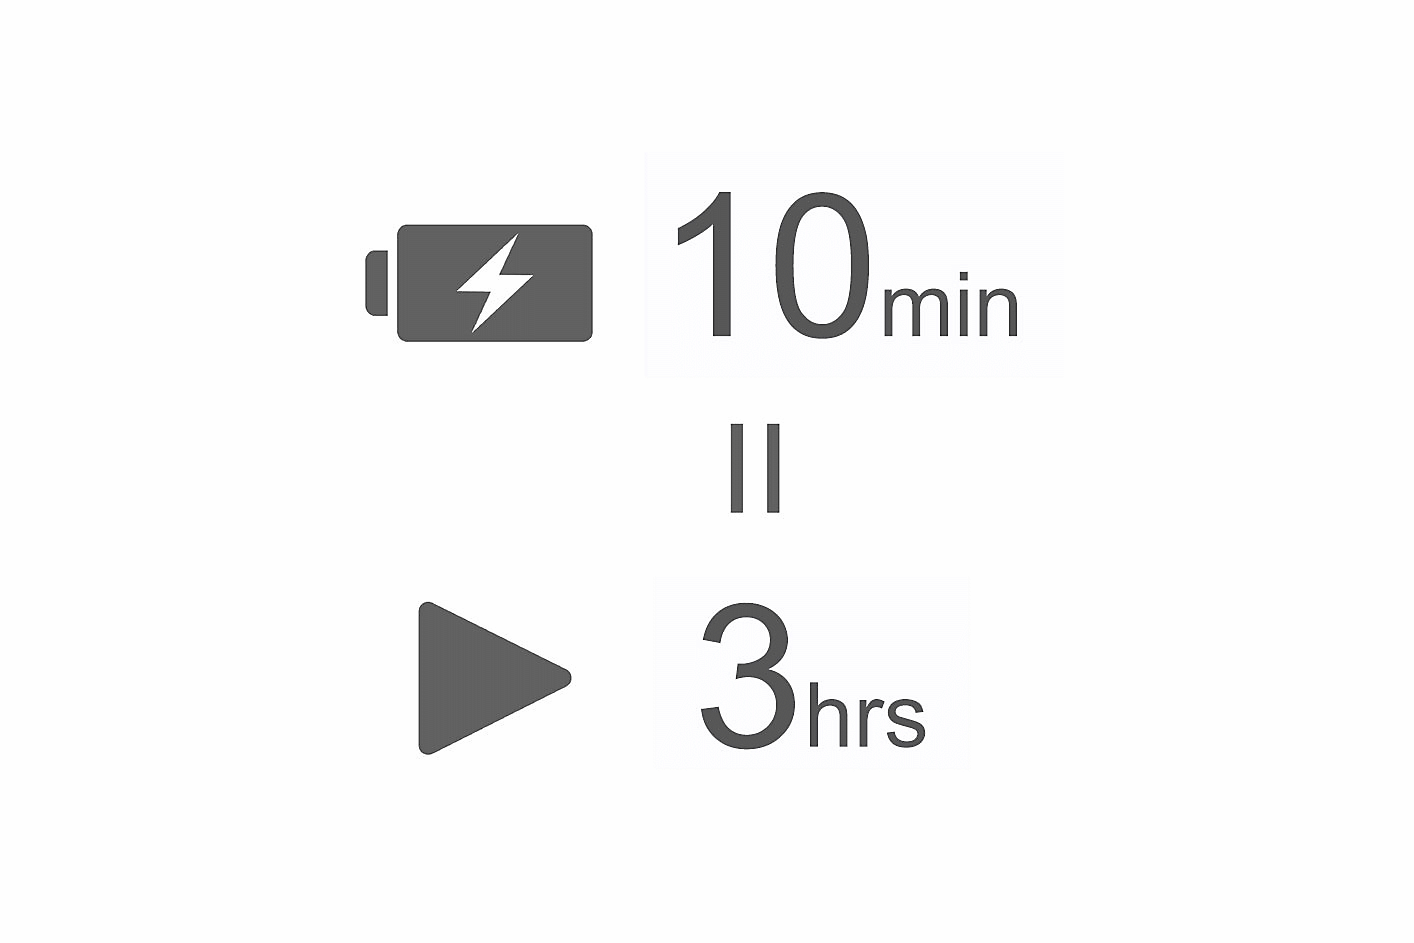 Εικόνα ενός εικονιδίου μπαταρίας με το σύμβολο του κεραυνού και κείμενο που γράφει "10 λεπτά" πάνω από το σύμβολο της ισοδυναμίας, καθώς και ένα εικονίδιο αναπαραγωγής με κείμενο που γράφει "3 ώρες"